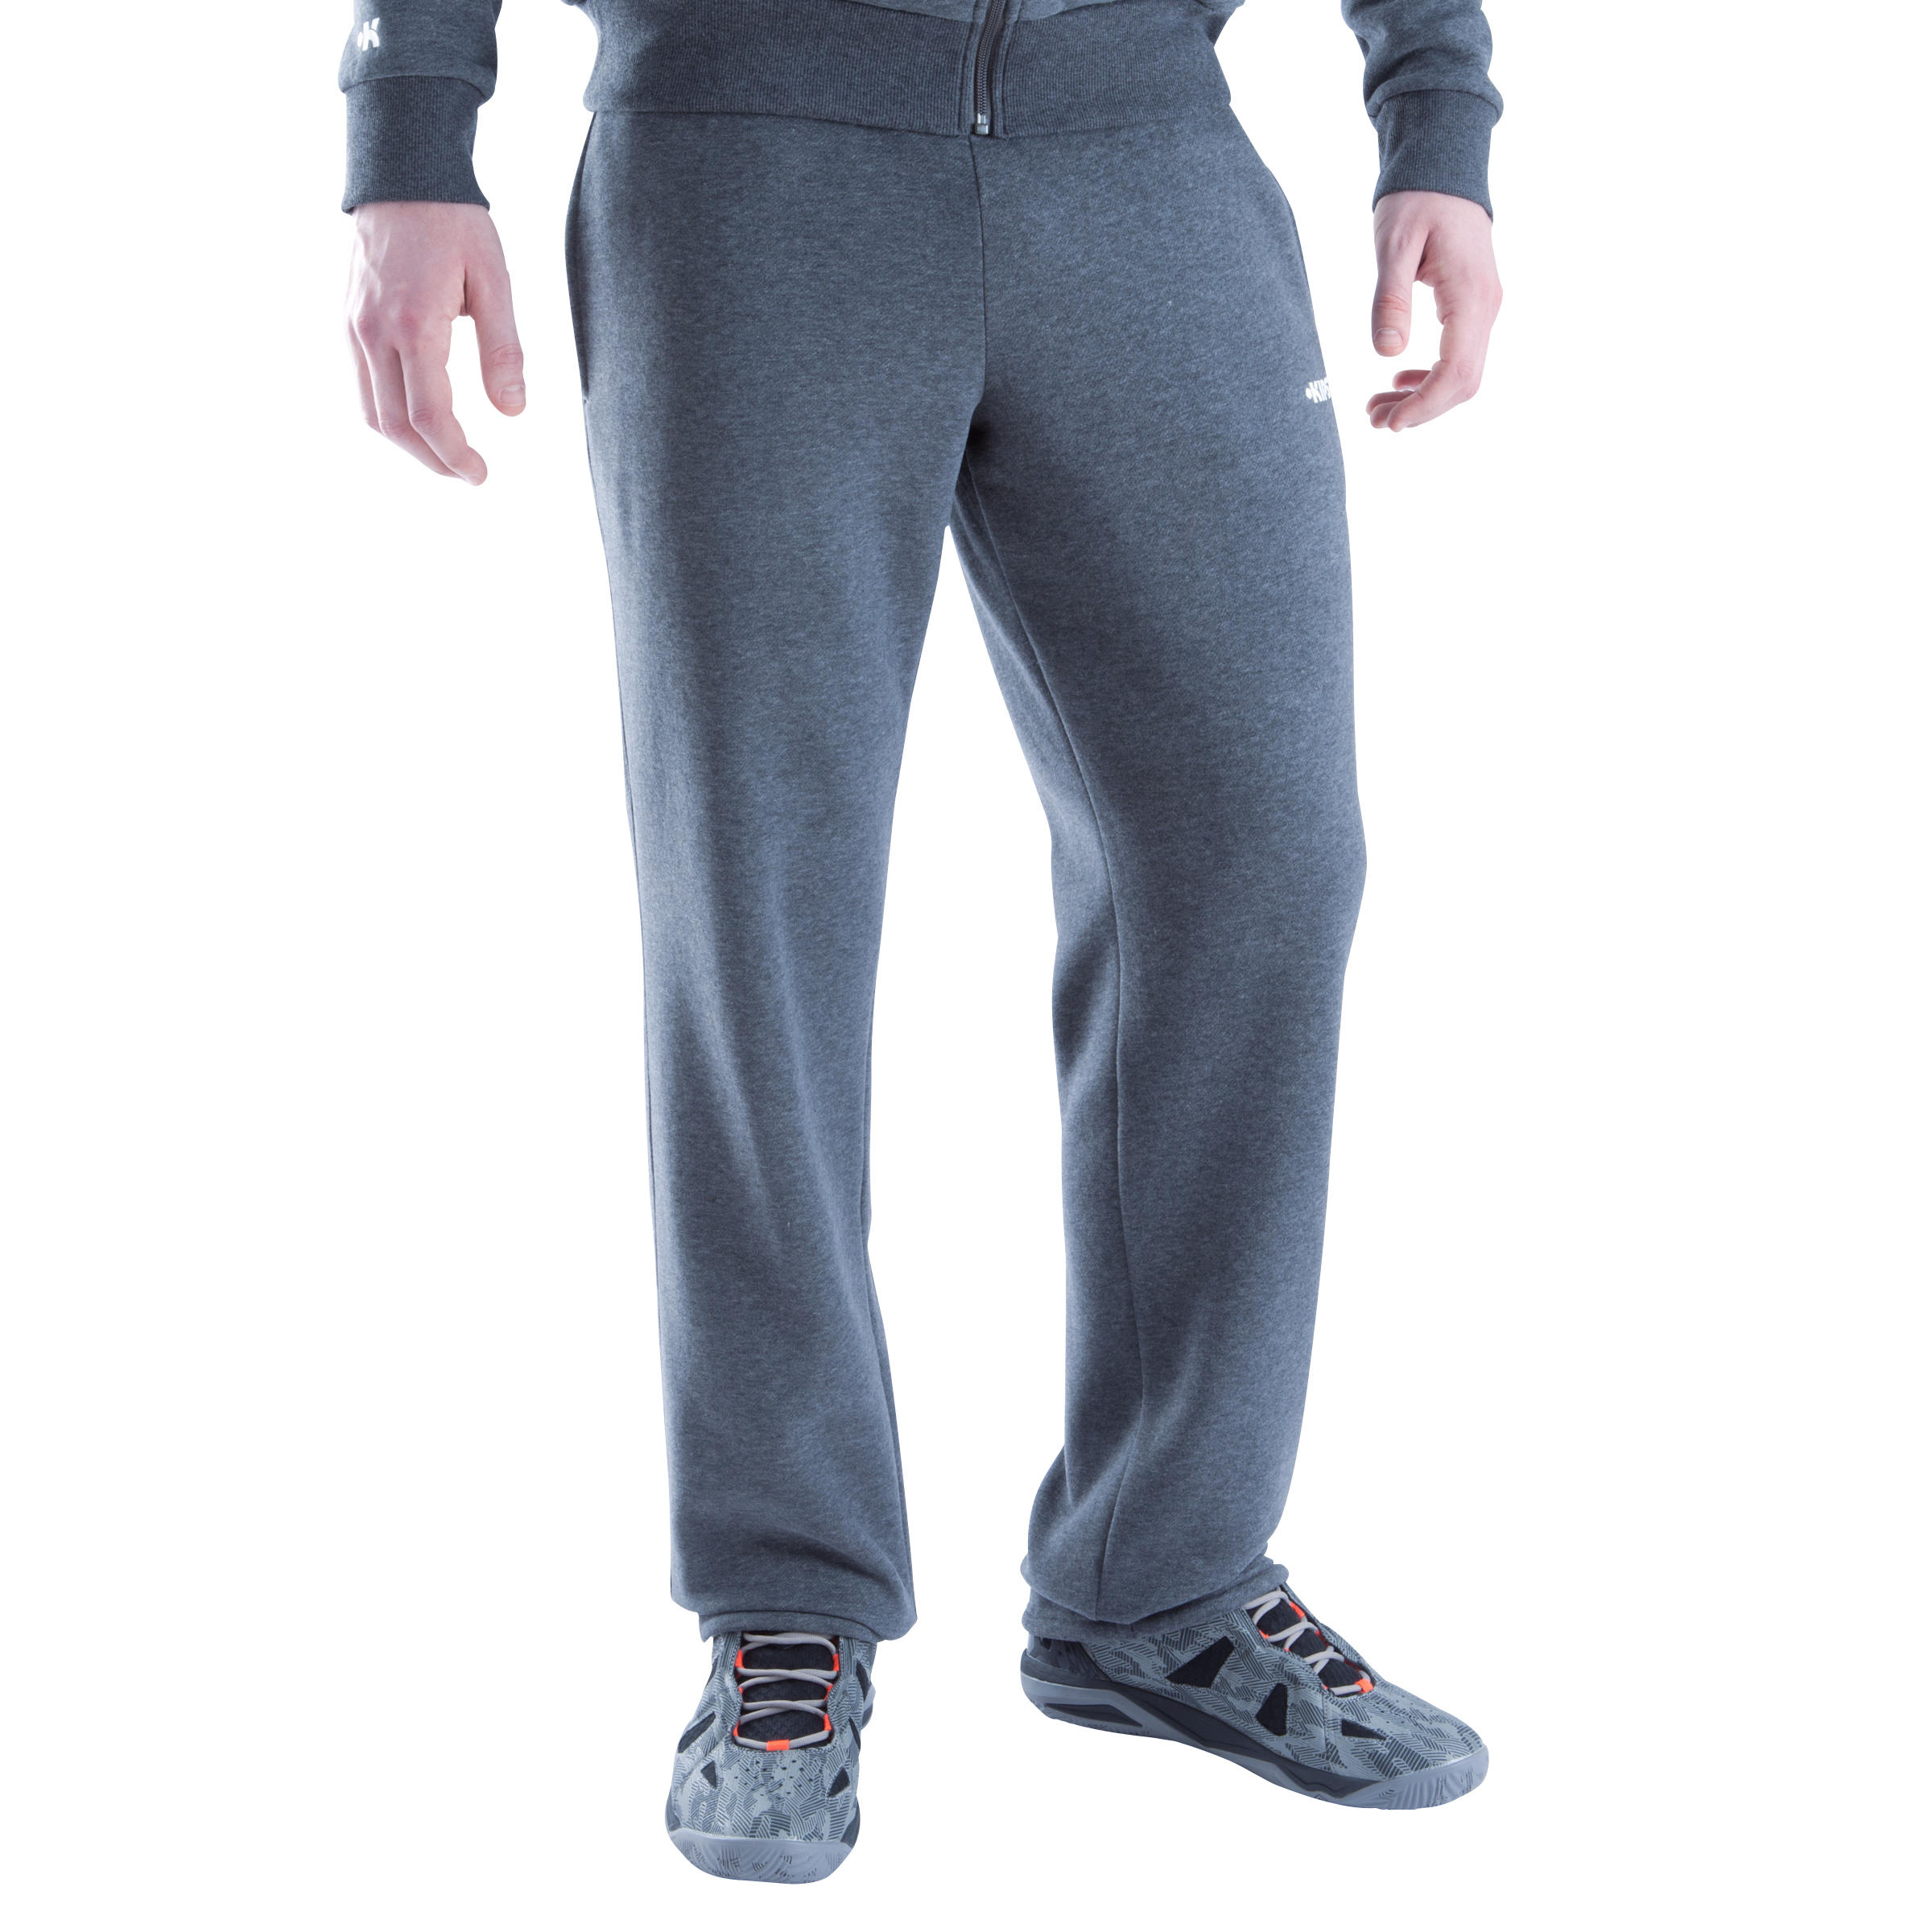 B300 Men's Basketball Sweatpants - Dark Grey 2/10